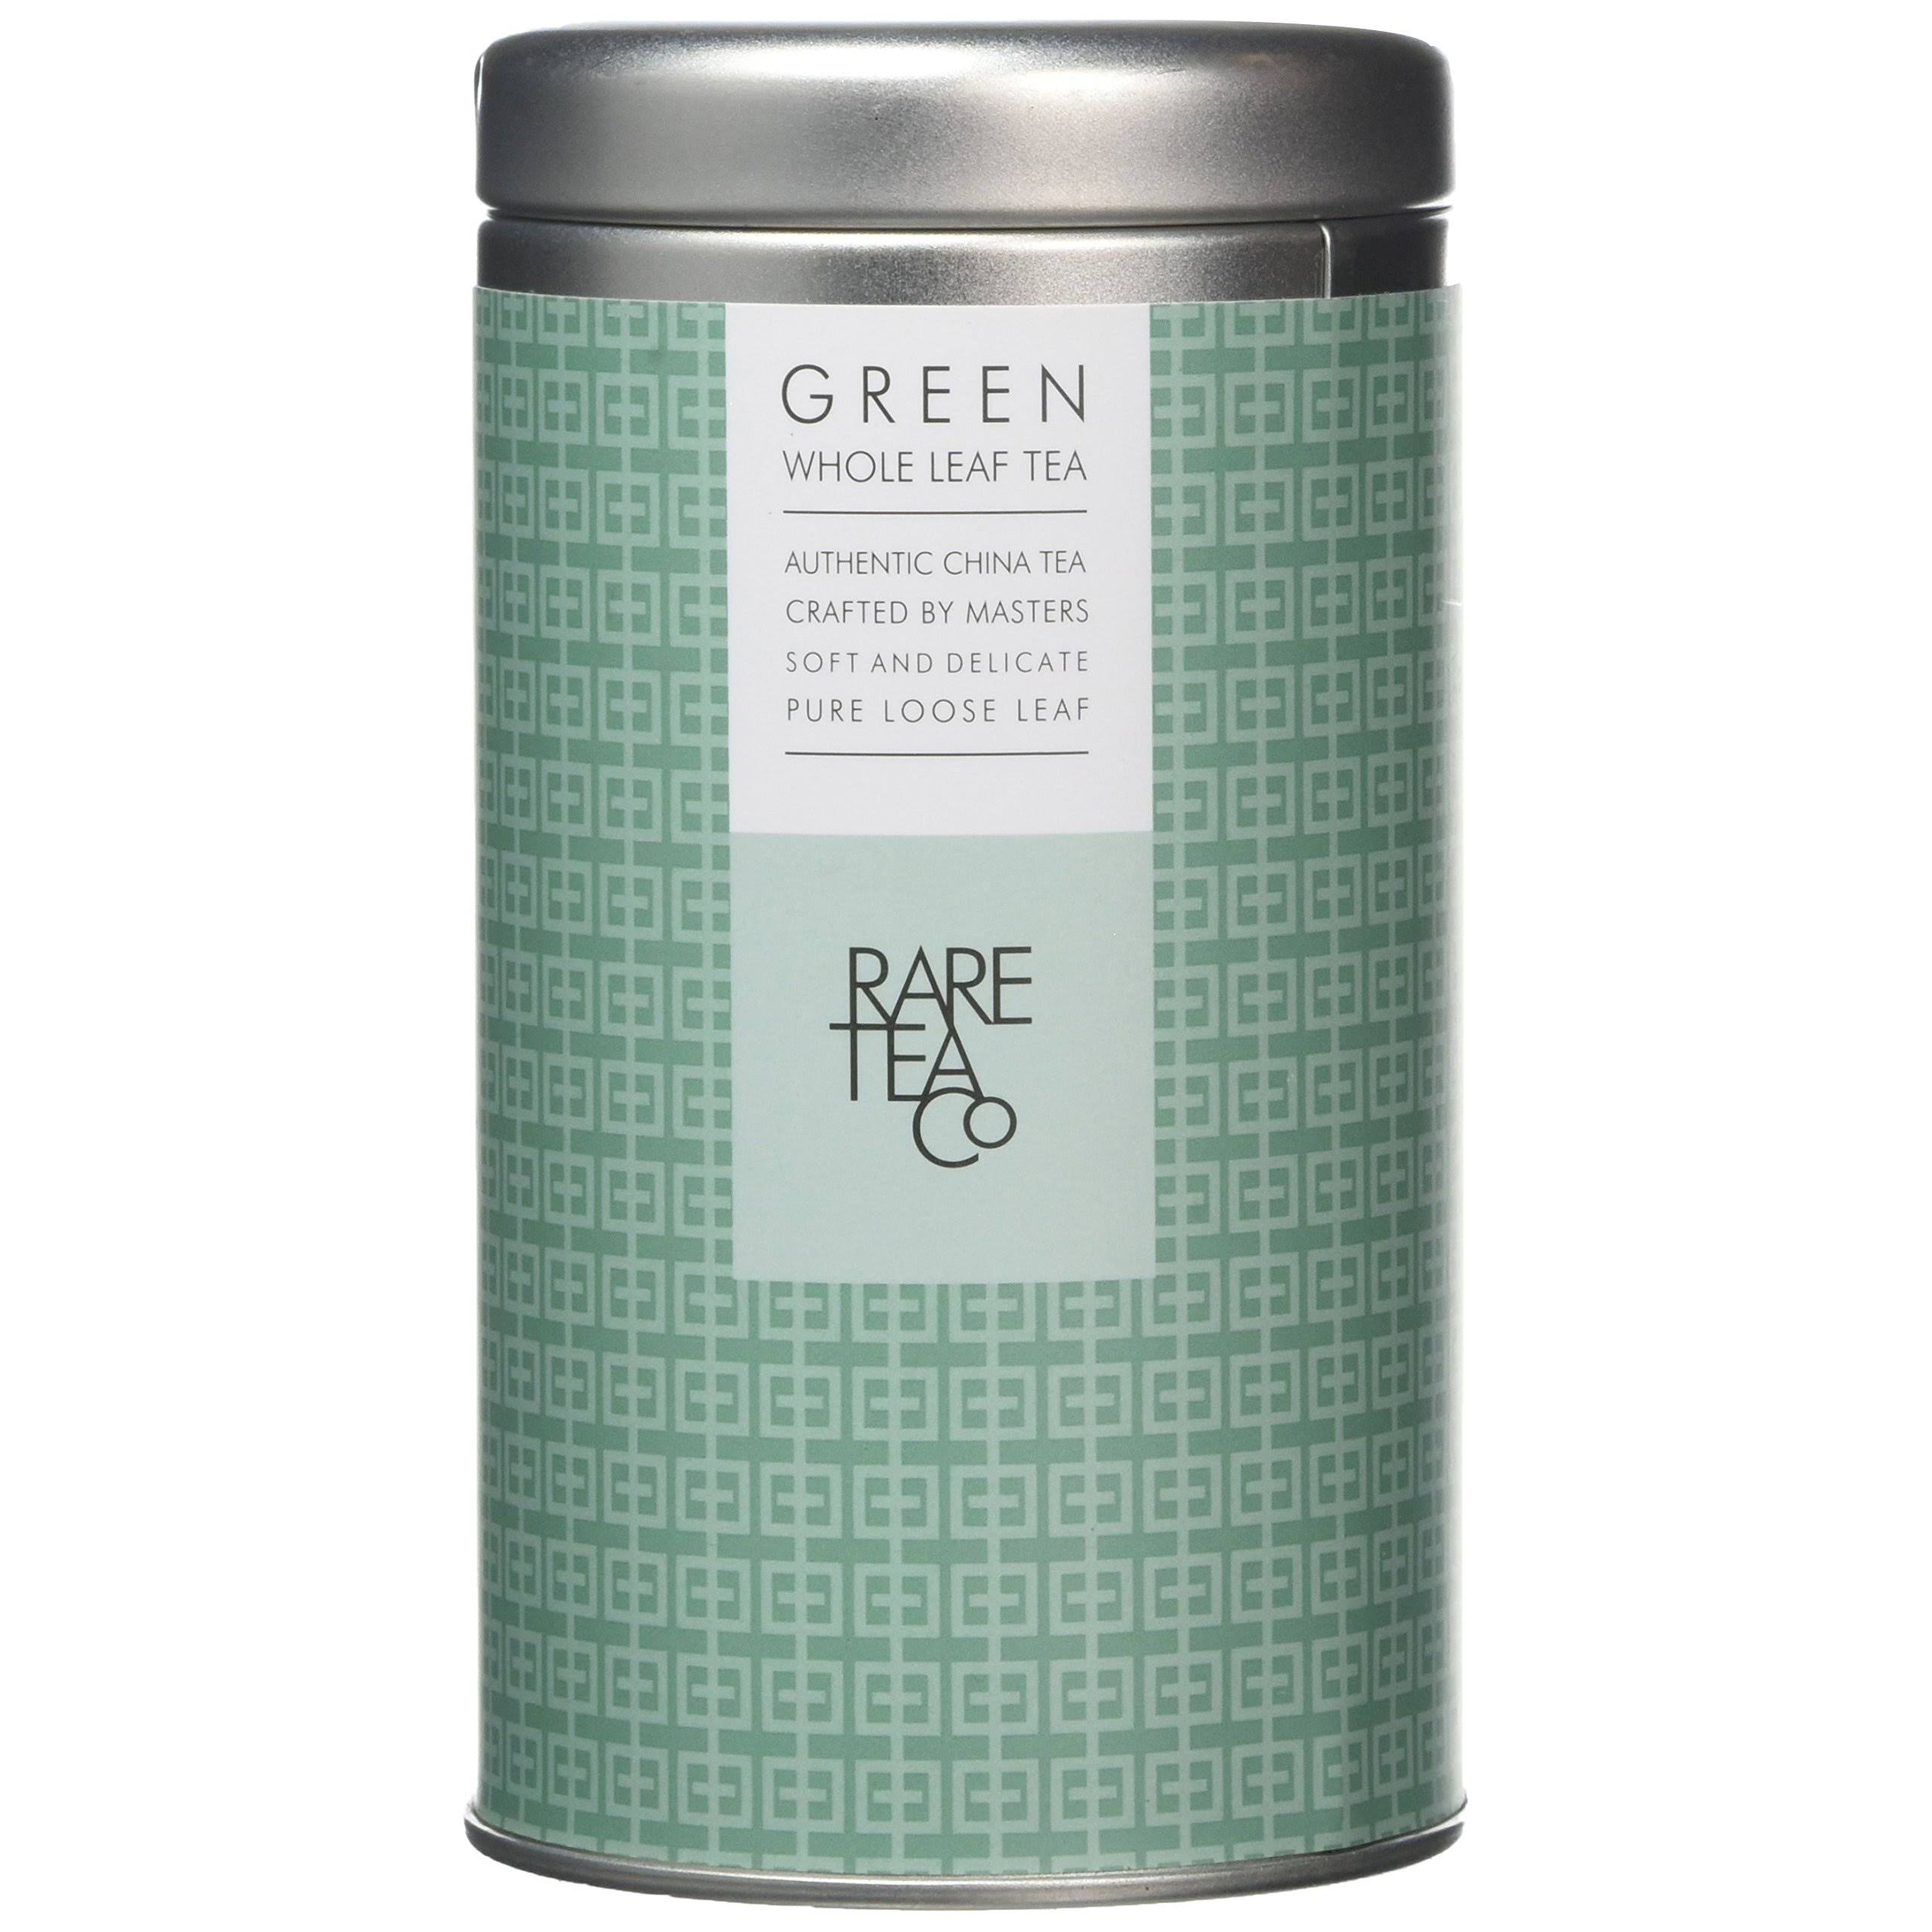 Rare Tea Company Green Whole Leaf Tea in Tin, 25 g